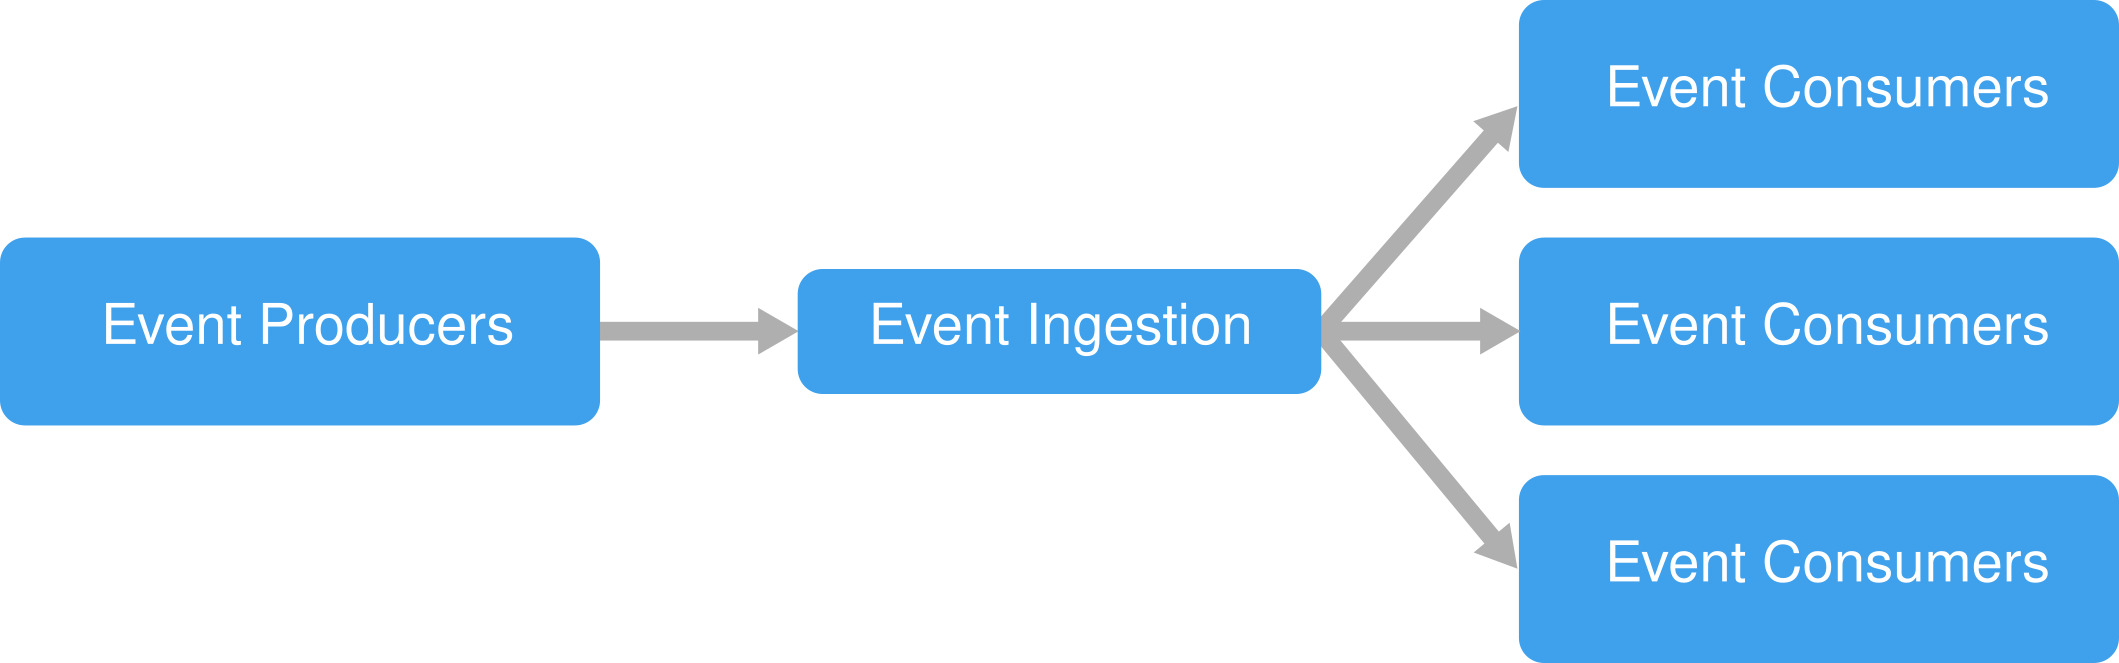 Event-driven architecture diagram